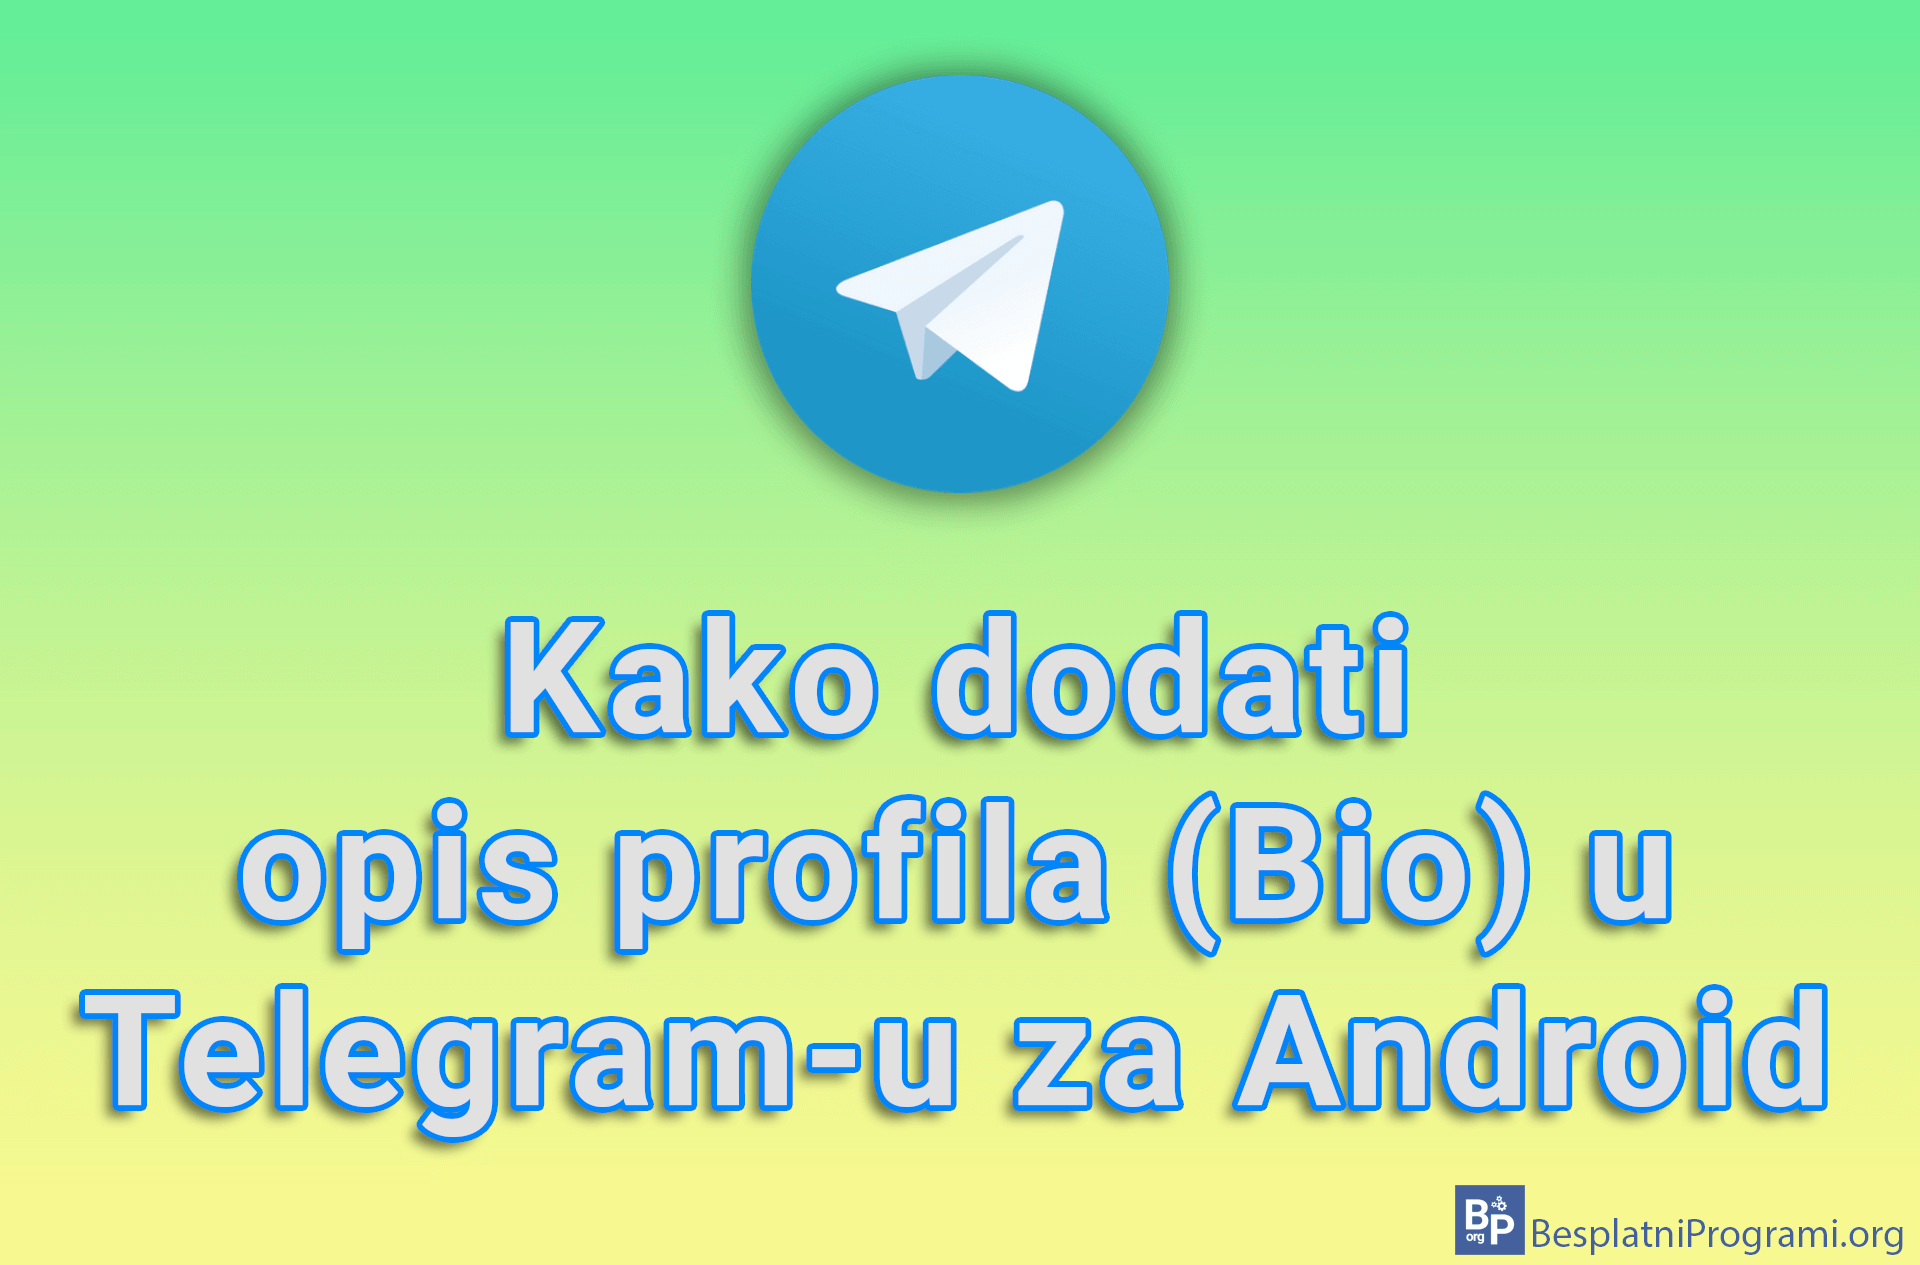 Kako dodati opis profila (Bio) u Telegram-u za Android